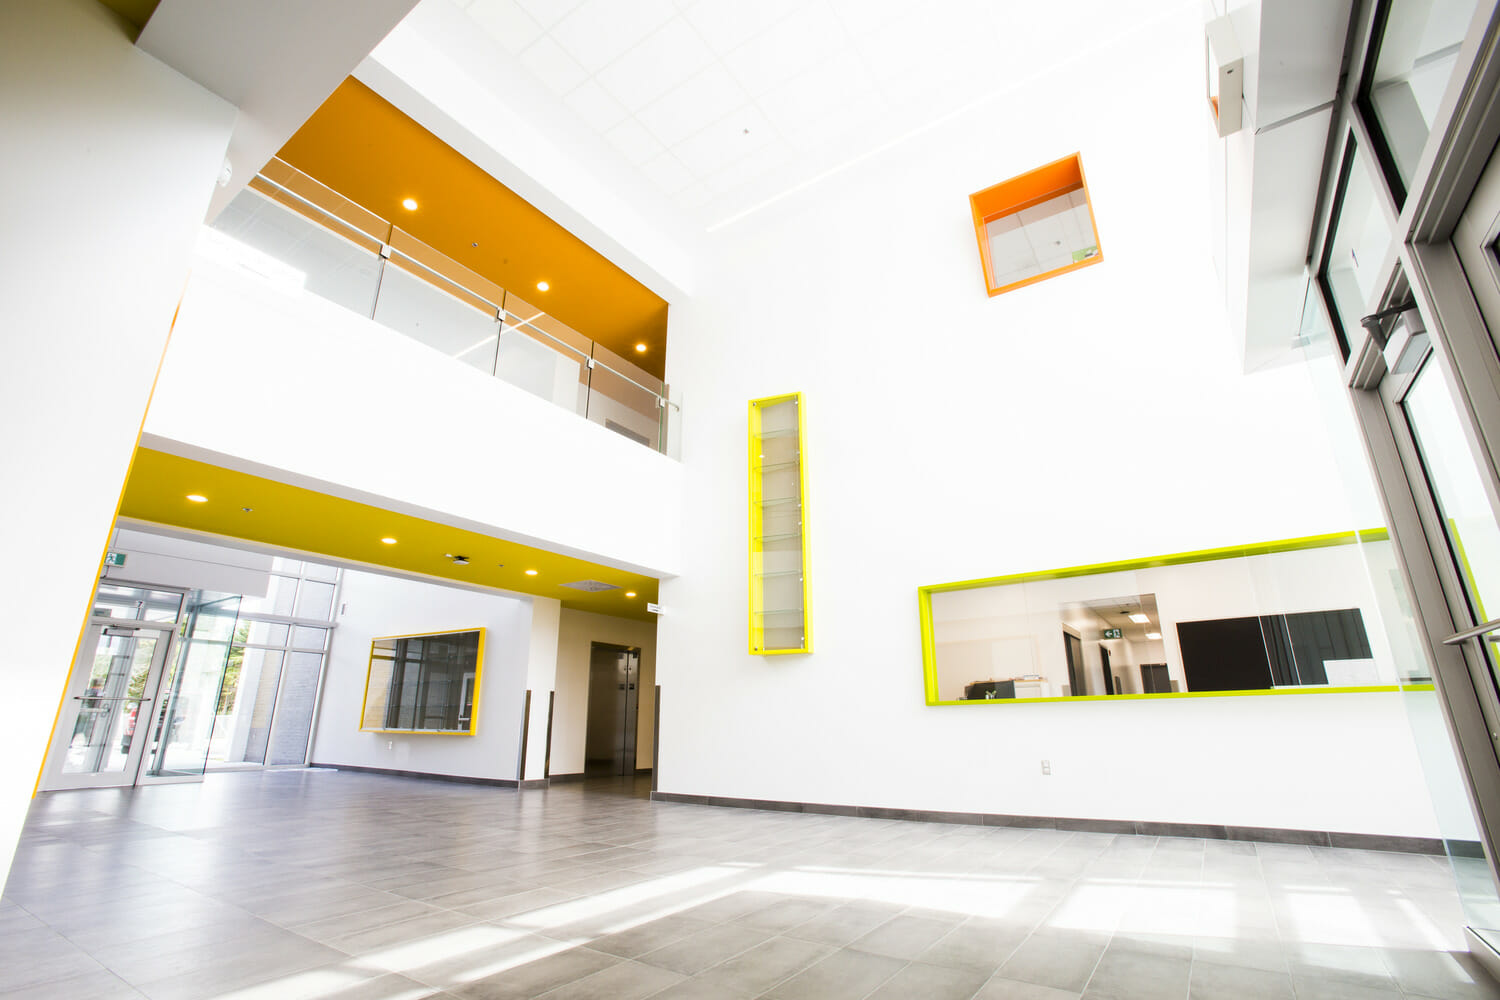 Un couloir dans un immeuble aux accents jaunes et blancs.